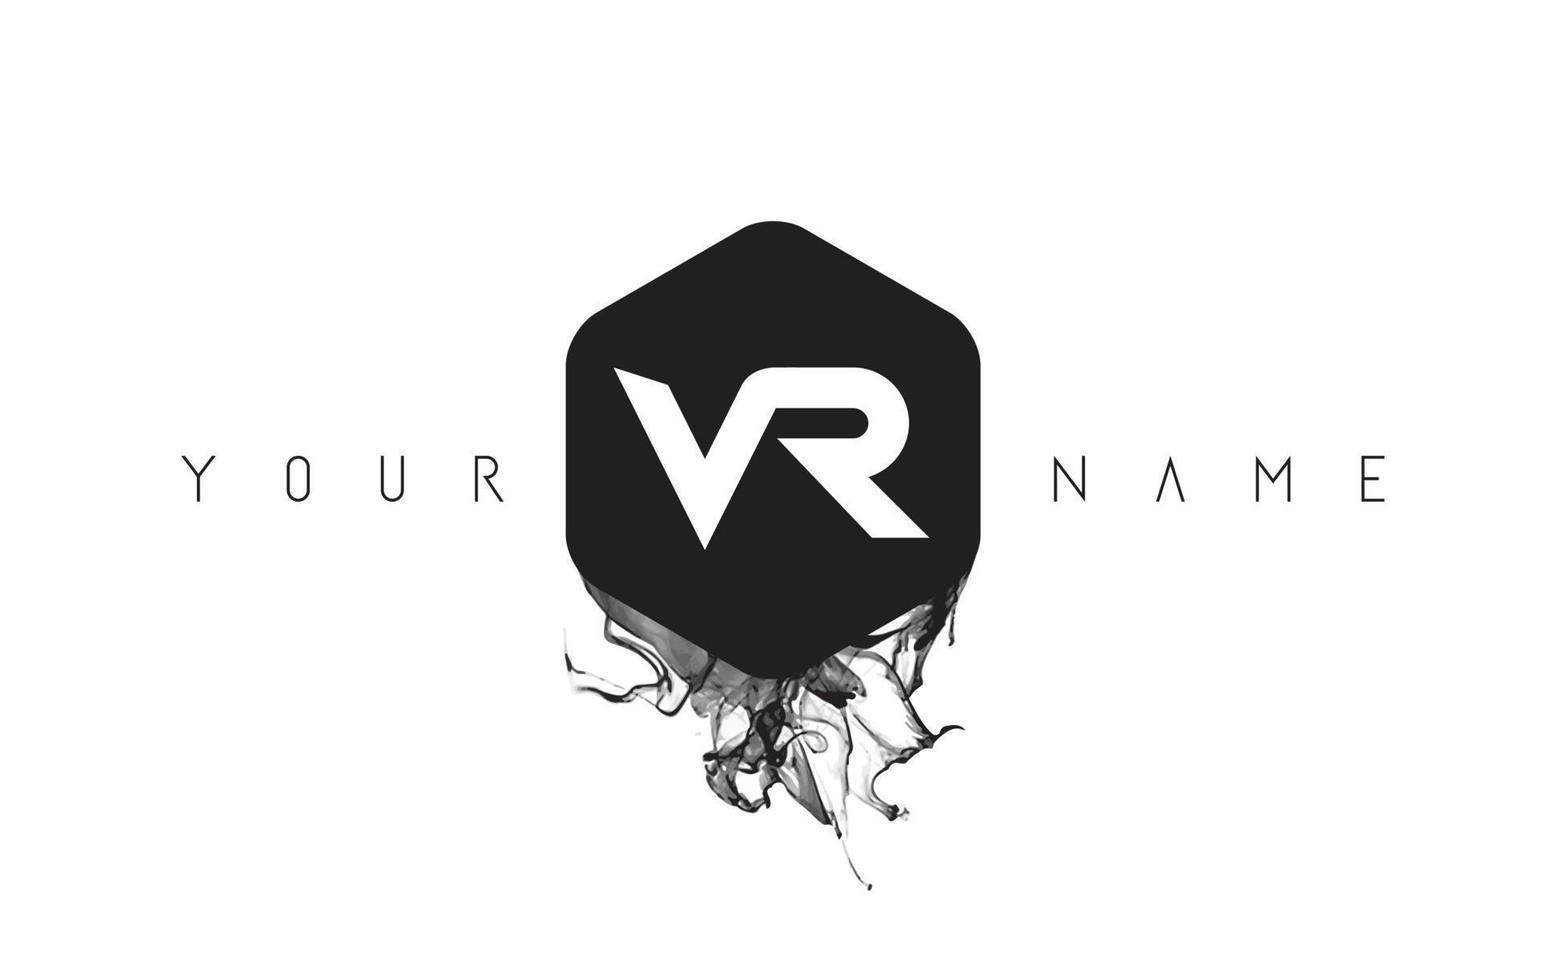 VR Letter Logo Design with Black Ink Spill vector